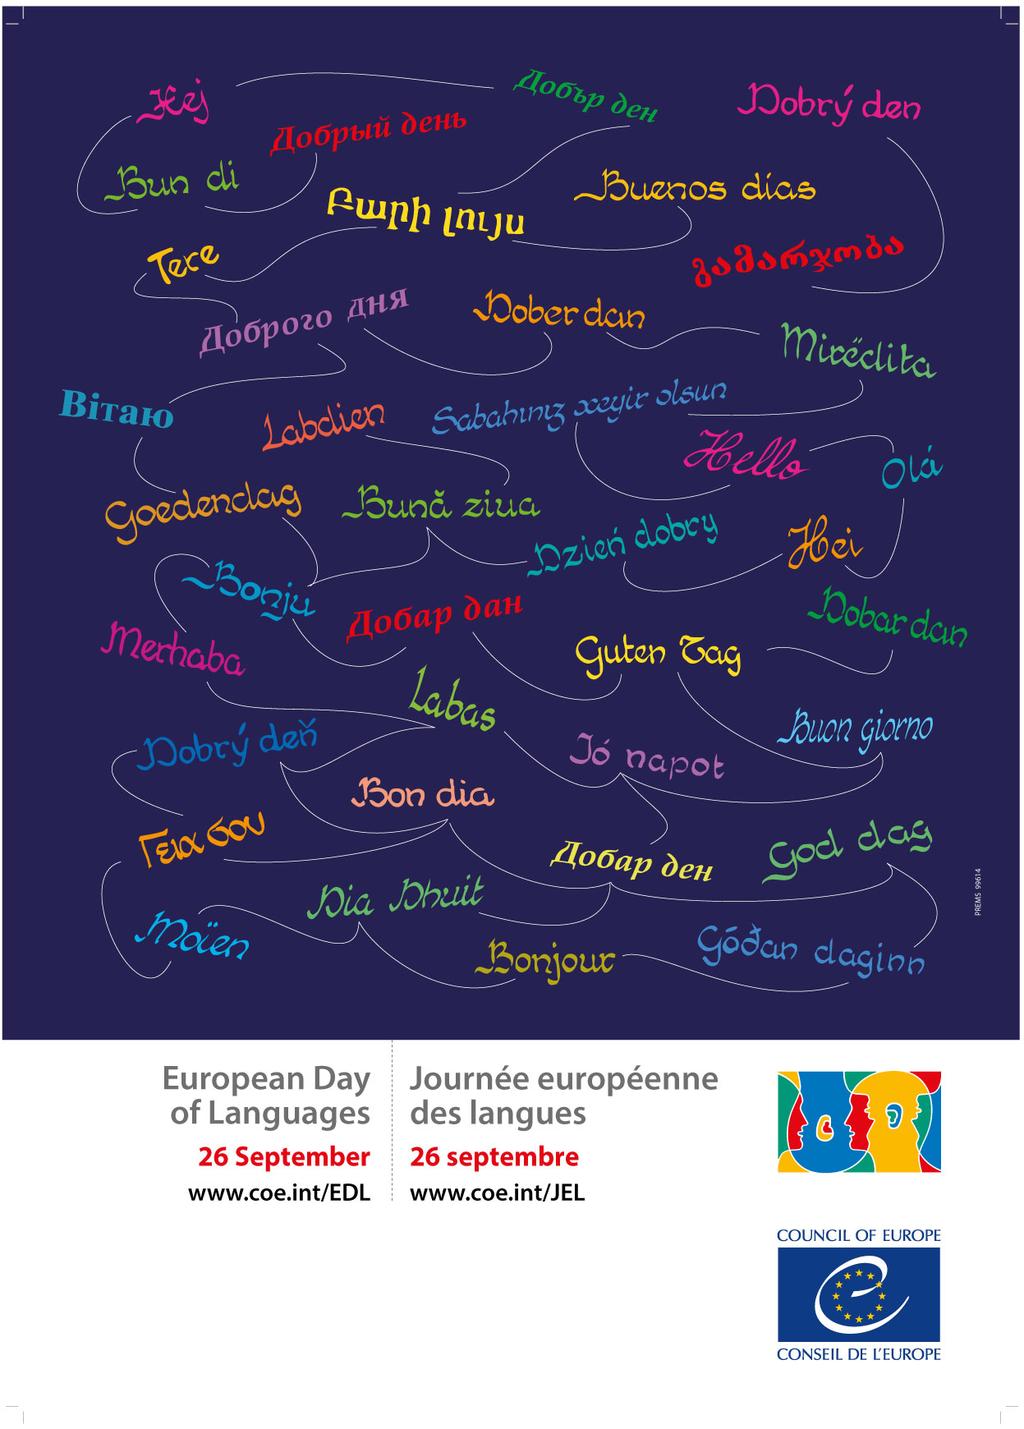 EU Språkdagen 26 september Europeiska språkdagen, som firades för första gången i samband med Språkåret 2001 på initiativ av EU och Europarådet, infaller den 26 september varje år.